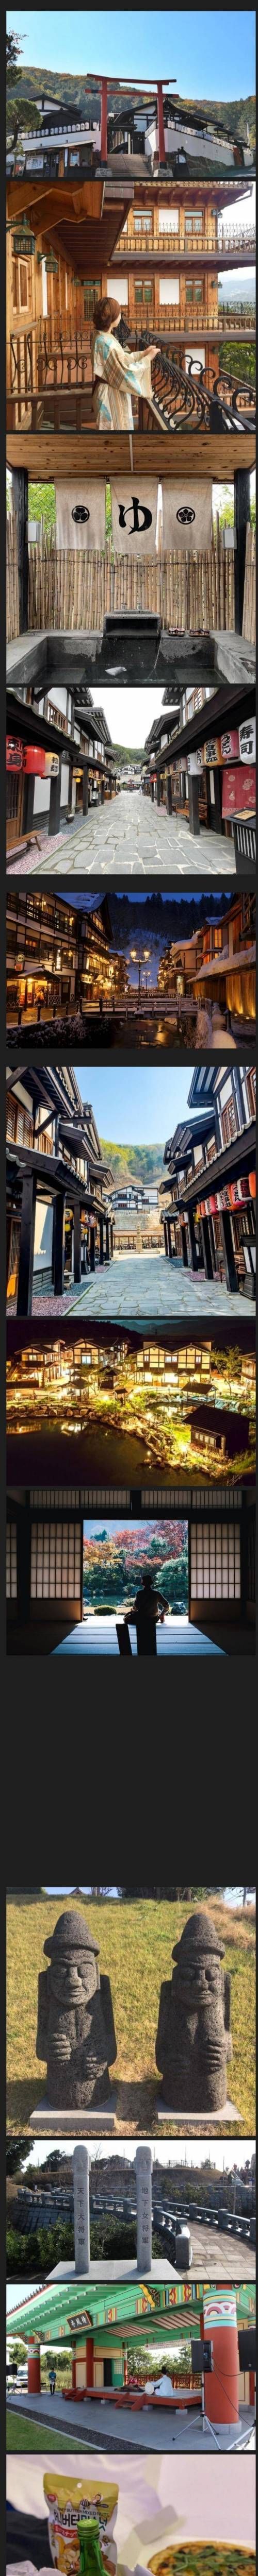 한국과 일본 관광지 비교